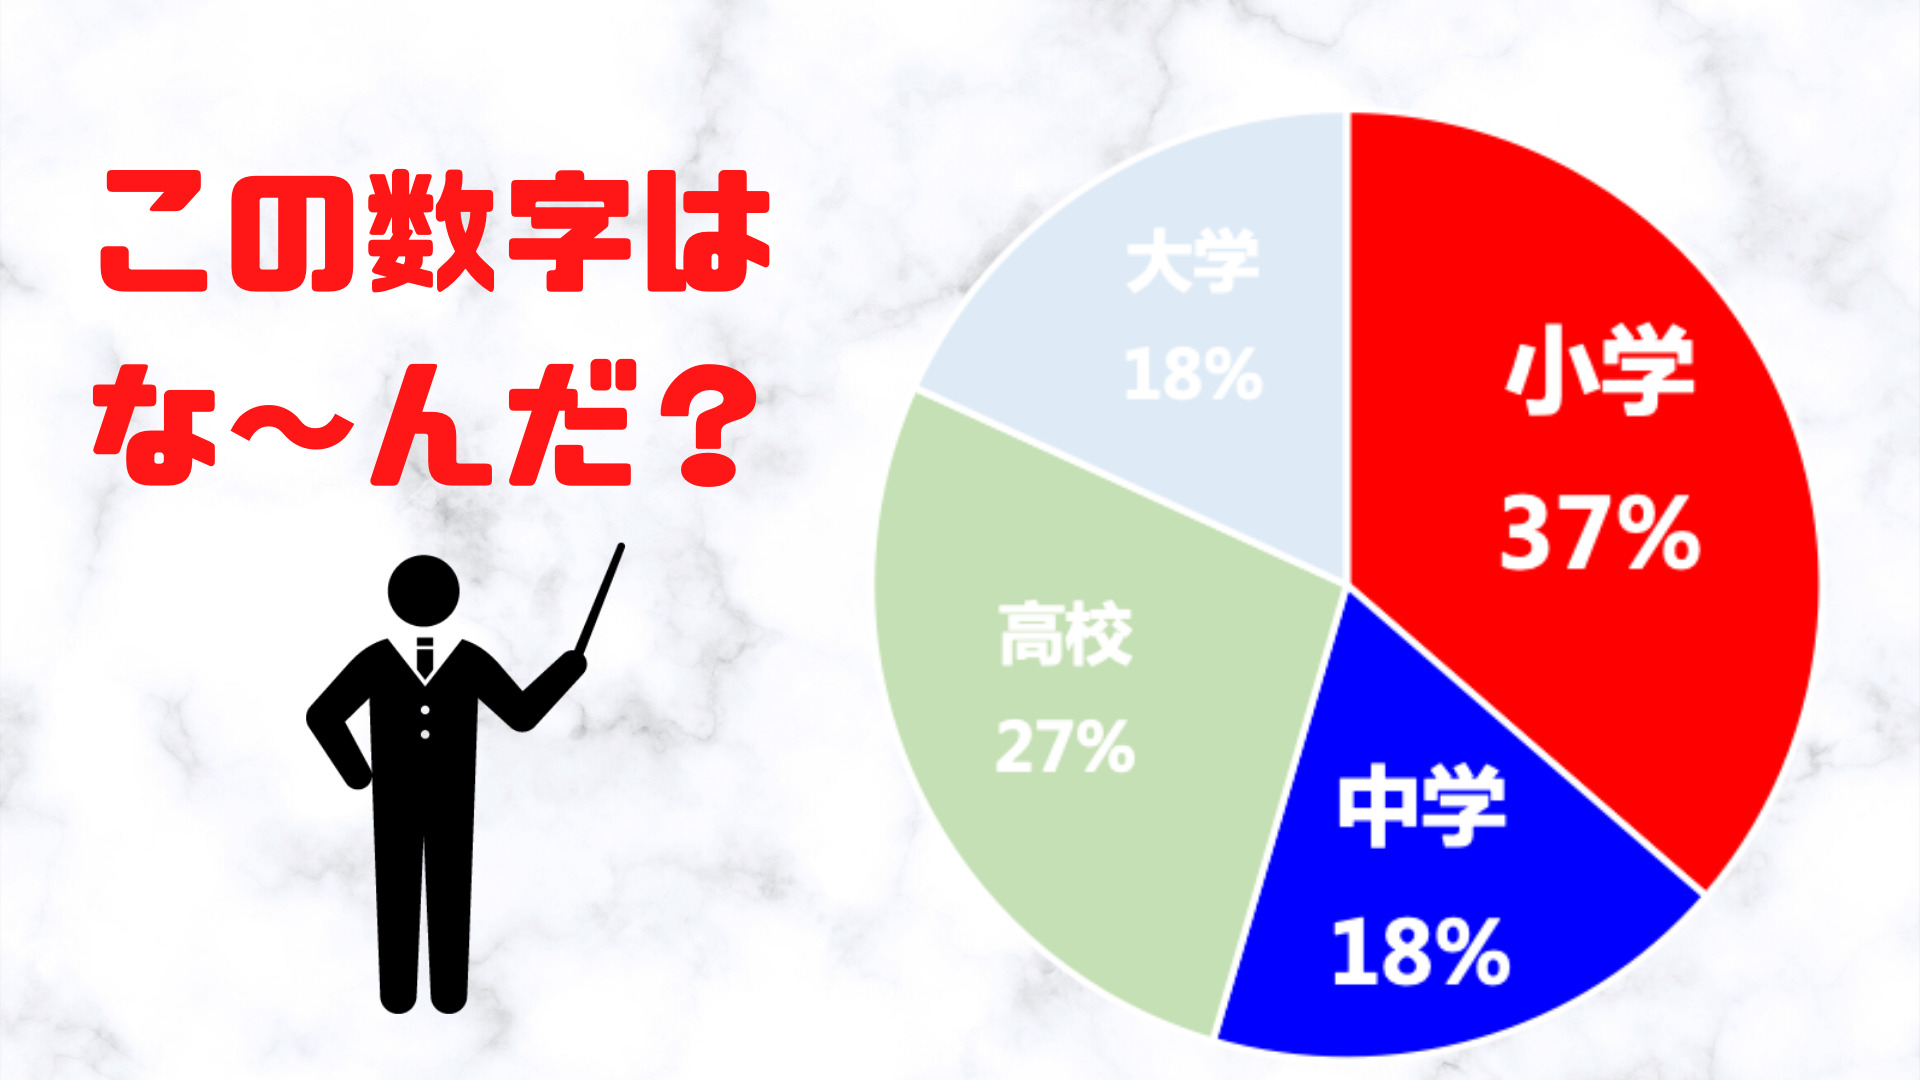 中国人が学校に通うのに『下宿した時期』を表している円グラフ。小学校、中学校、高校、大学で区分されている。